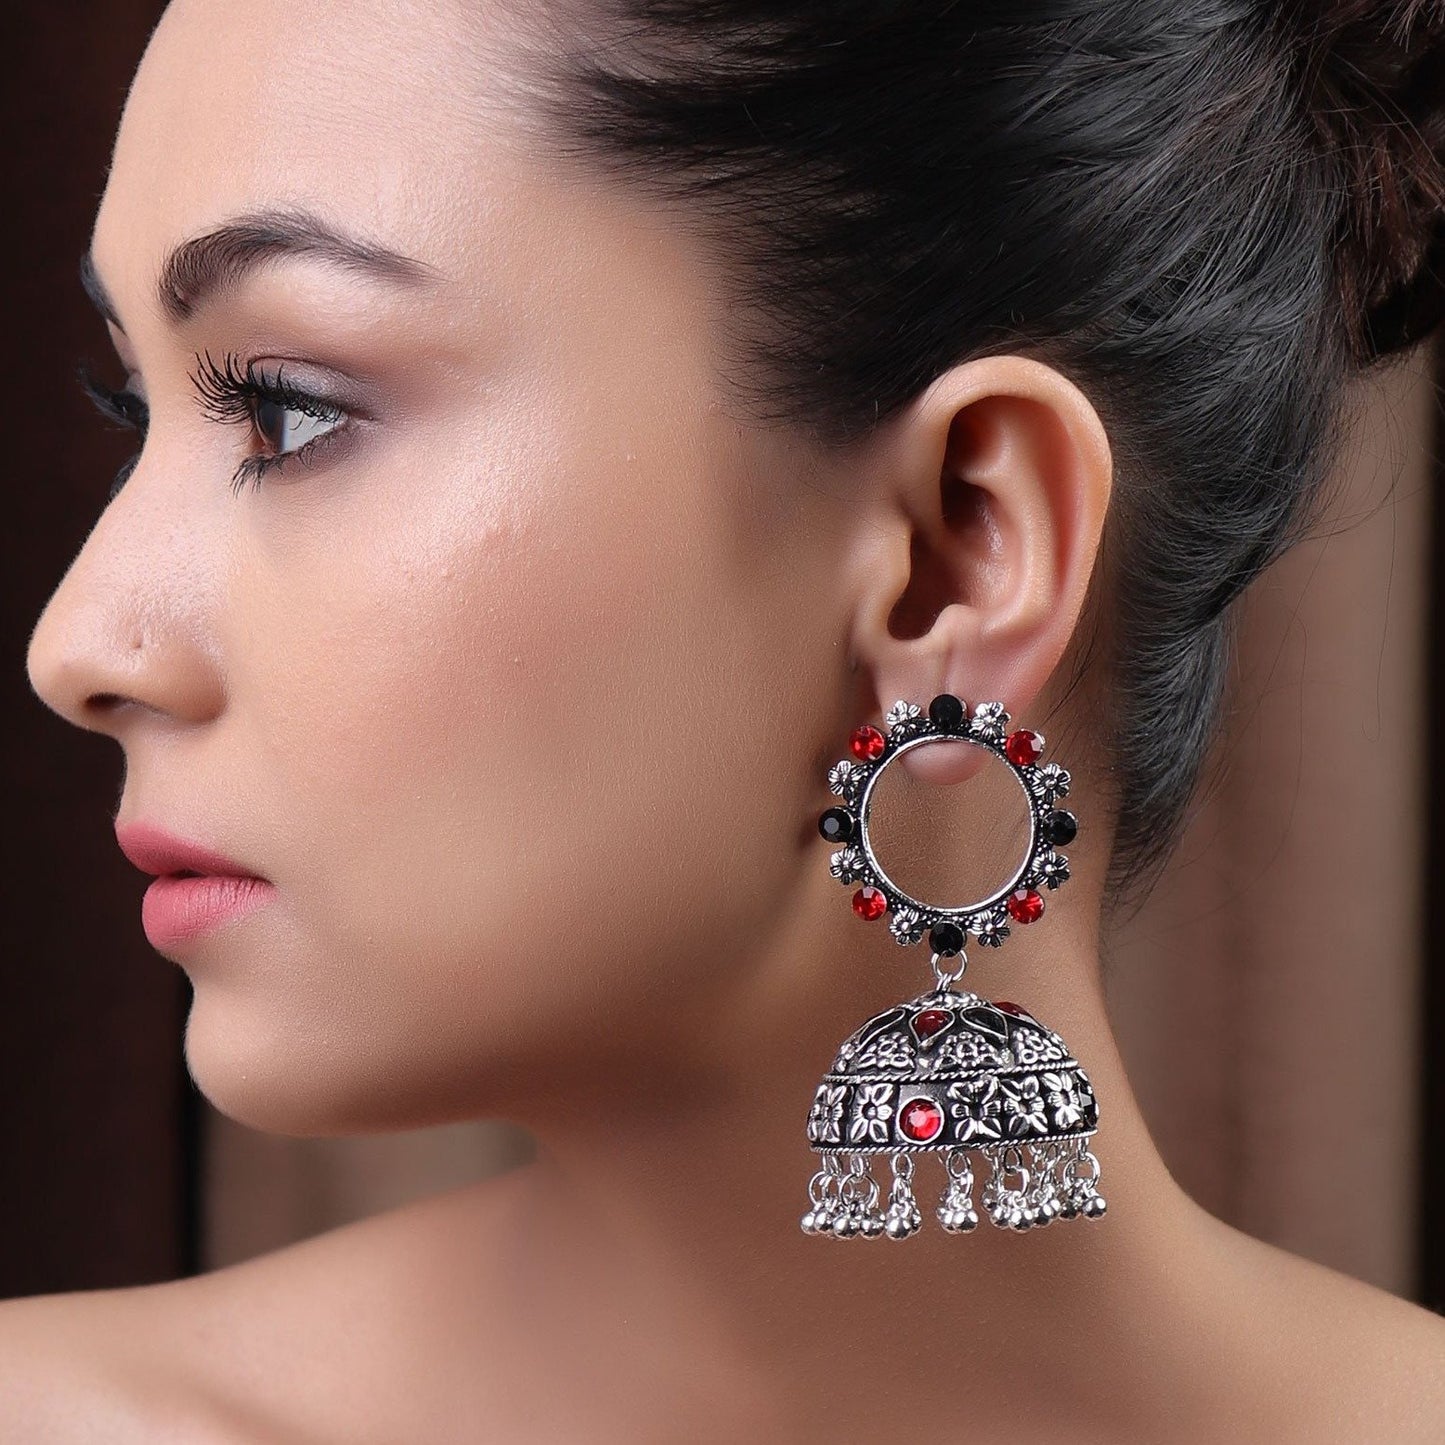 Earrings,The Twirl Pearl Earring in Red & Black - Cippele Multi Store